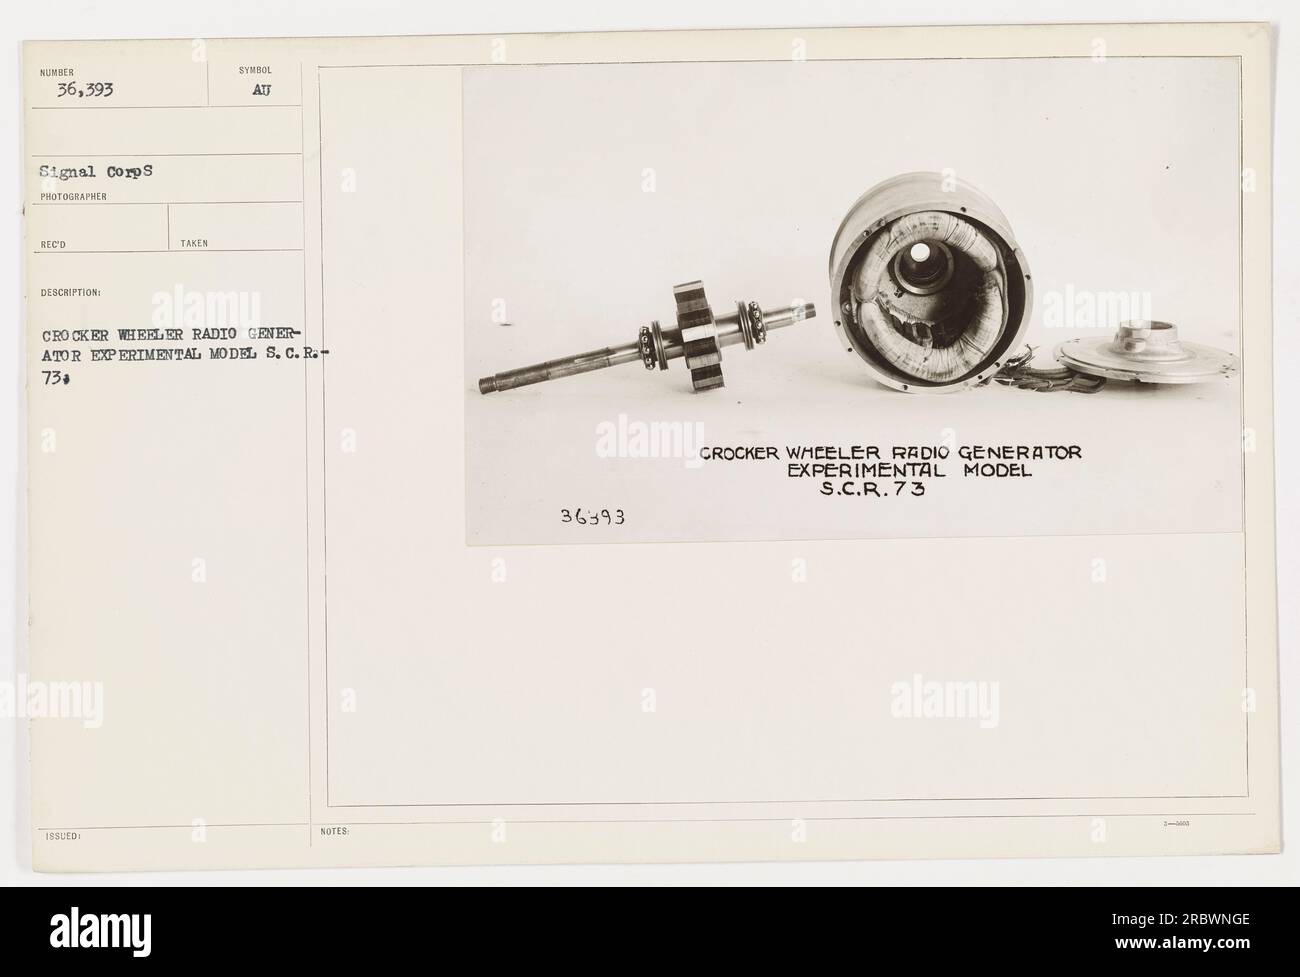 Diese Abbildung zeigt einen Crocker Wheeler-Funkgenerator, ein experimentelles Modell namens S.C.R. 73. Es wurde von einem Fotografen vom Signal Corps während des Ersten Weltkriegs aufgenommen. Der Generator wurde für Kommunikationszwecke während militärischer Aktivitäten verwendet. Stockfoto